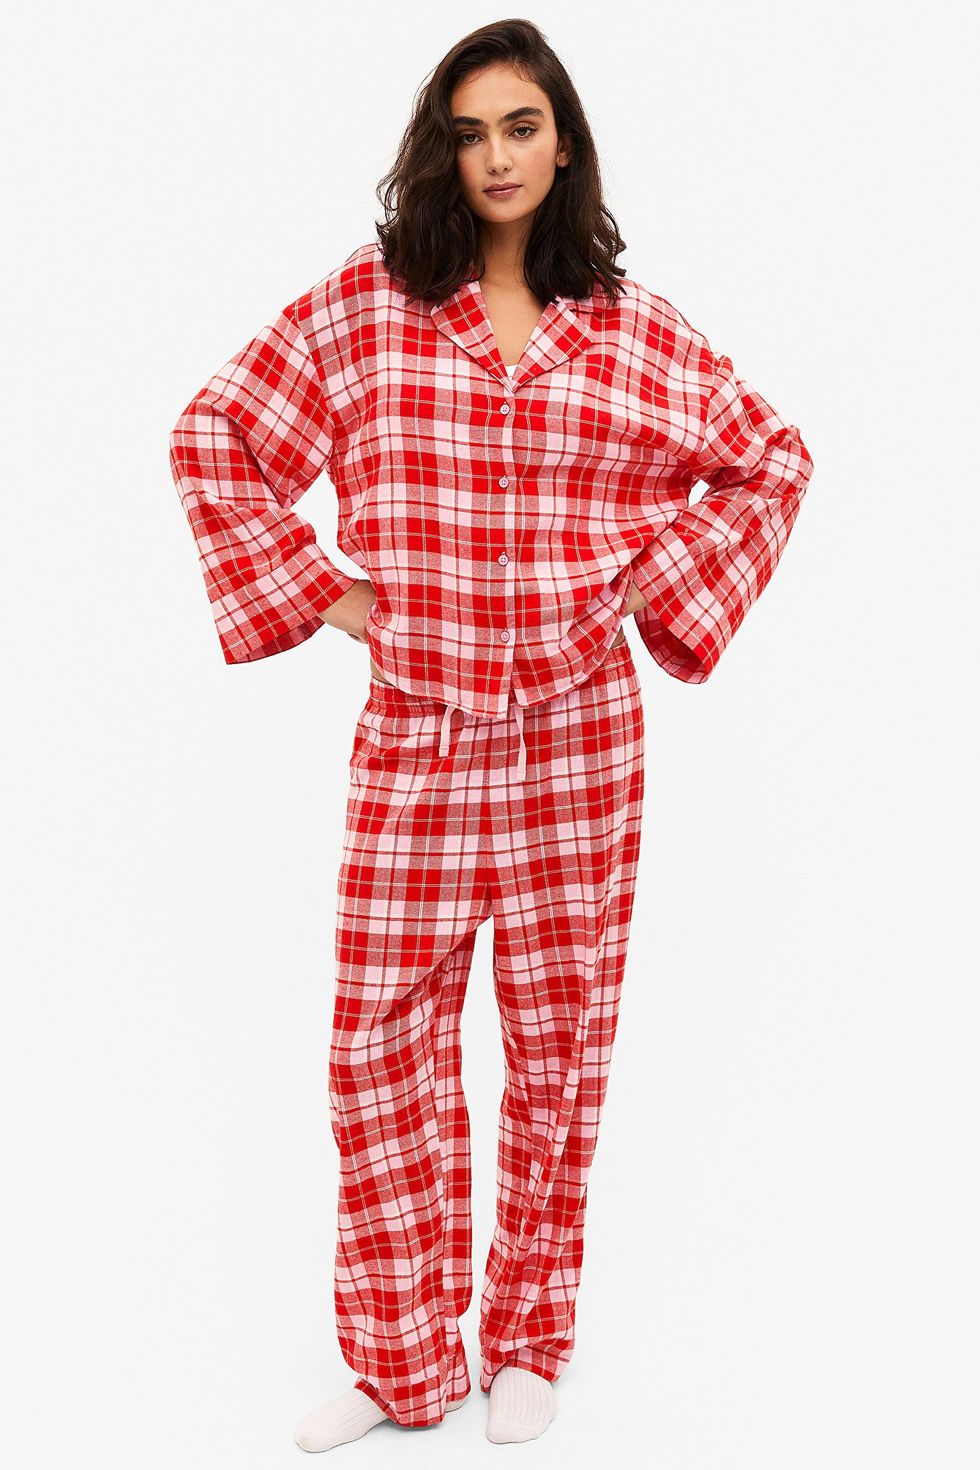 Best women's pyjamas 2023: 23 stylish pyjama sets for women